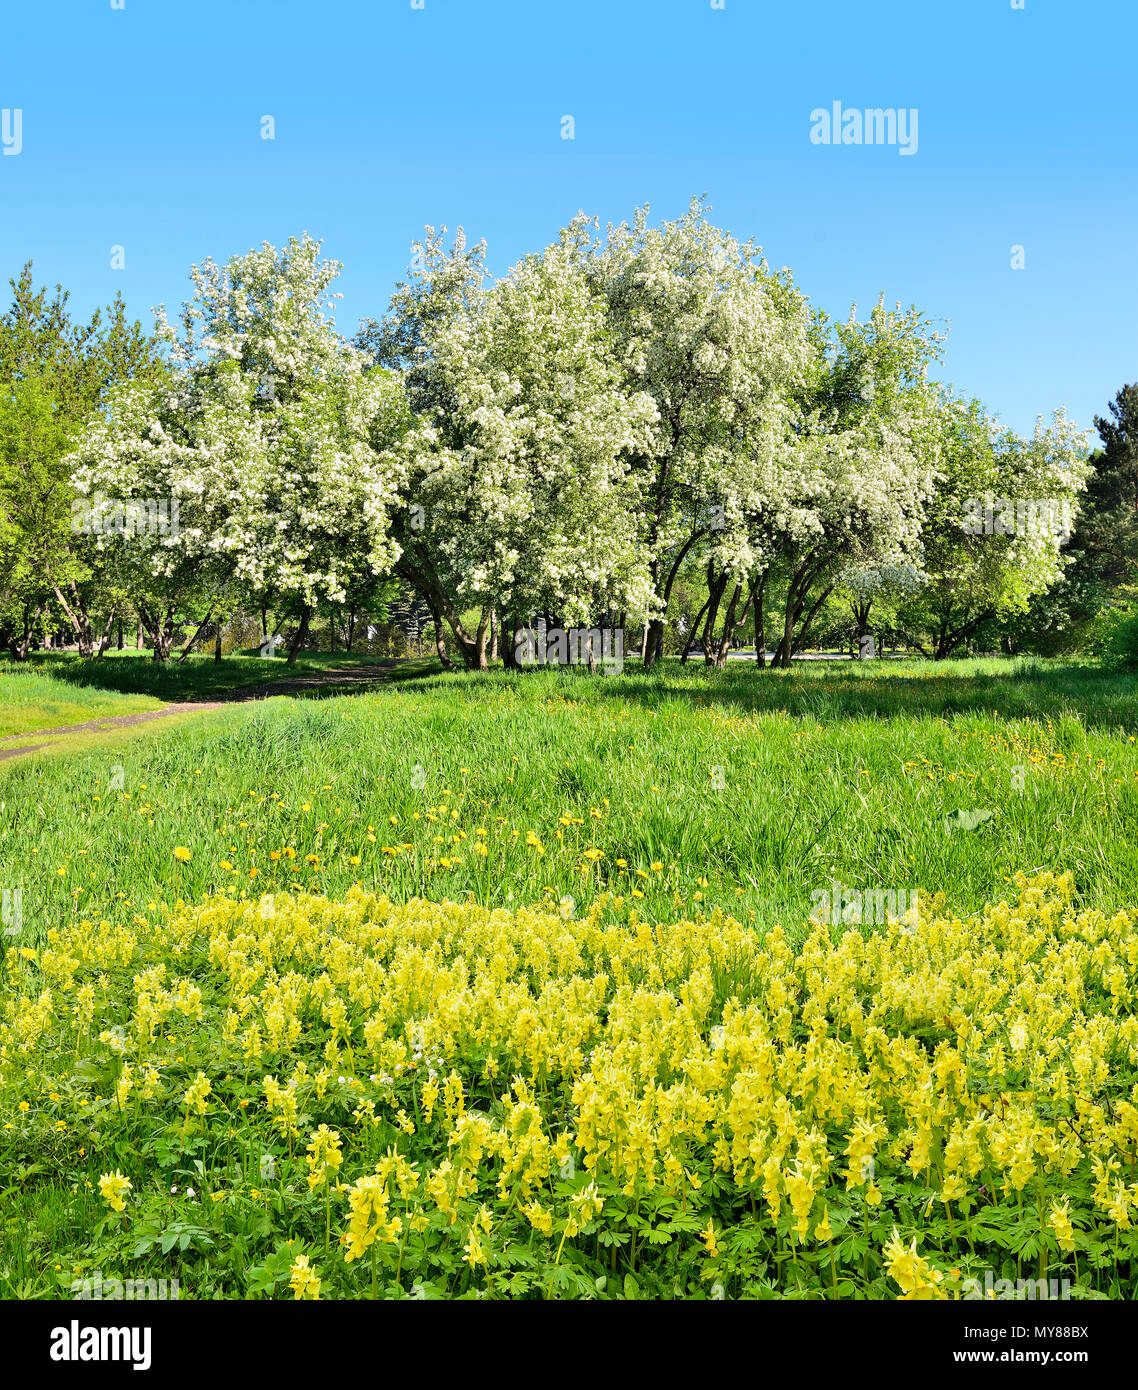 Sonnige frühling landschaft mit weiß blühende Apfelbäume, frisches Grün und  der Teppich gelbe Wildblumen Corydalis und Löwenzahn auf der Wiese auf  einer b Stockfotografie - Alamy